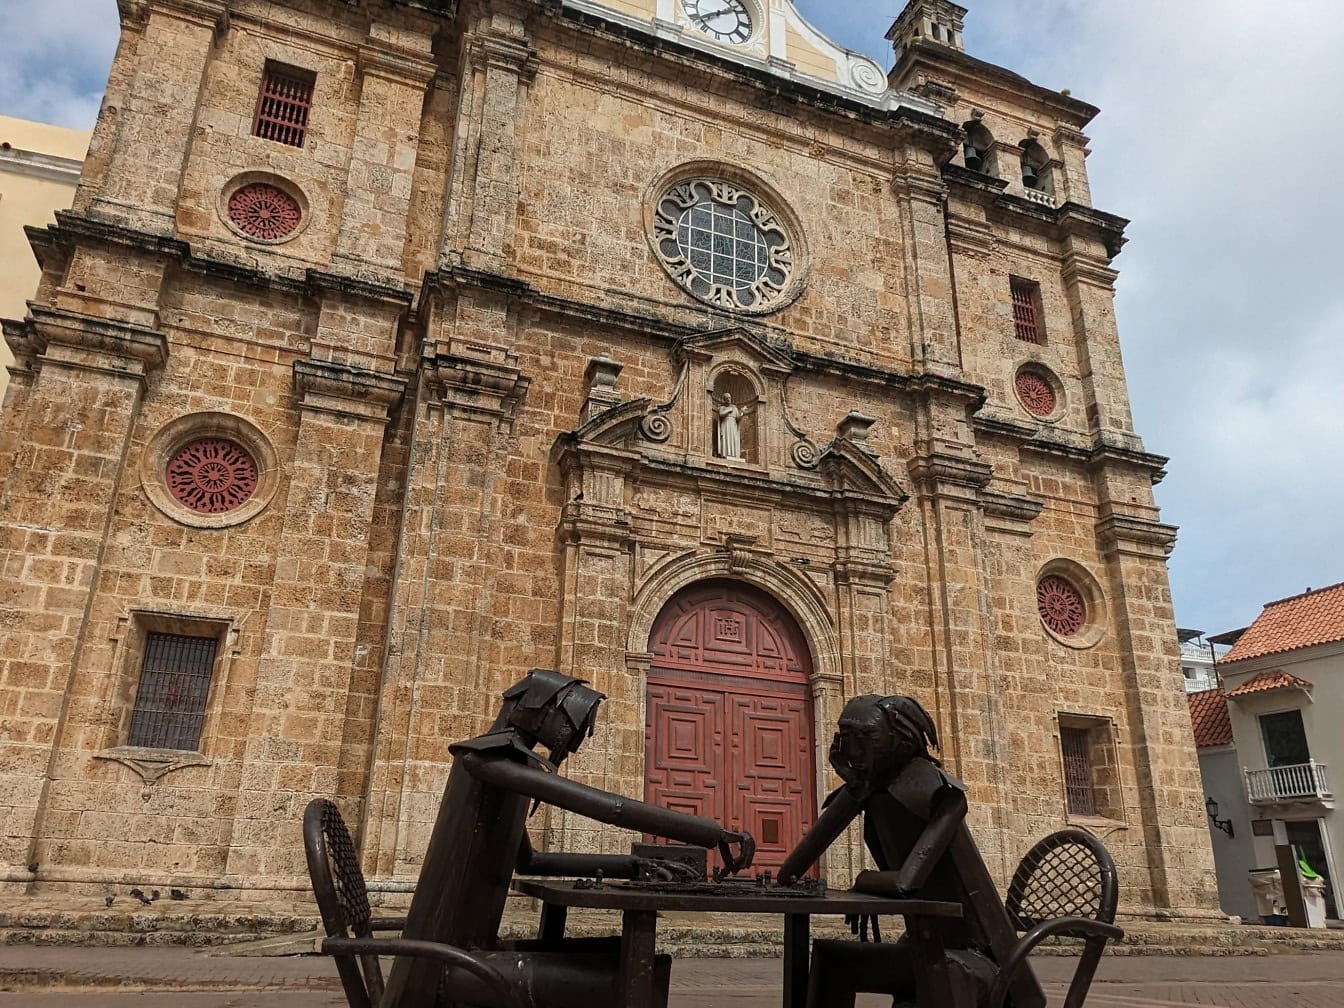 コロンビア州カルタヘナのサン・ペドロ・クラベール教会の前でテーブルに座りチェスをする2人の像